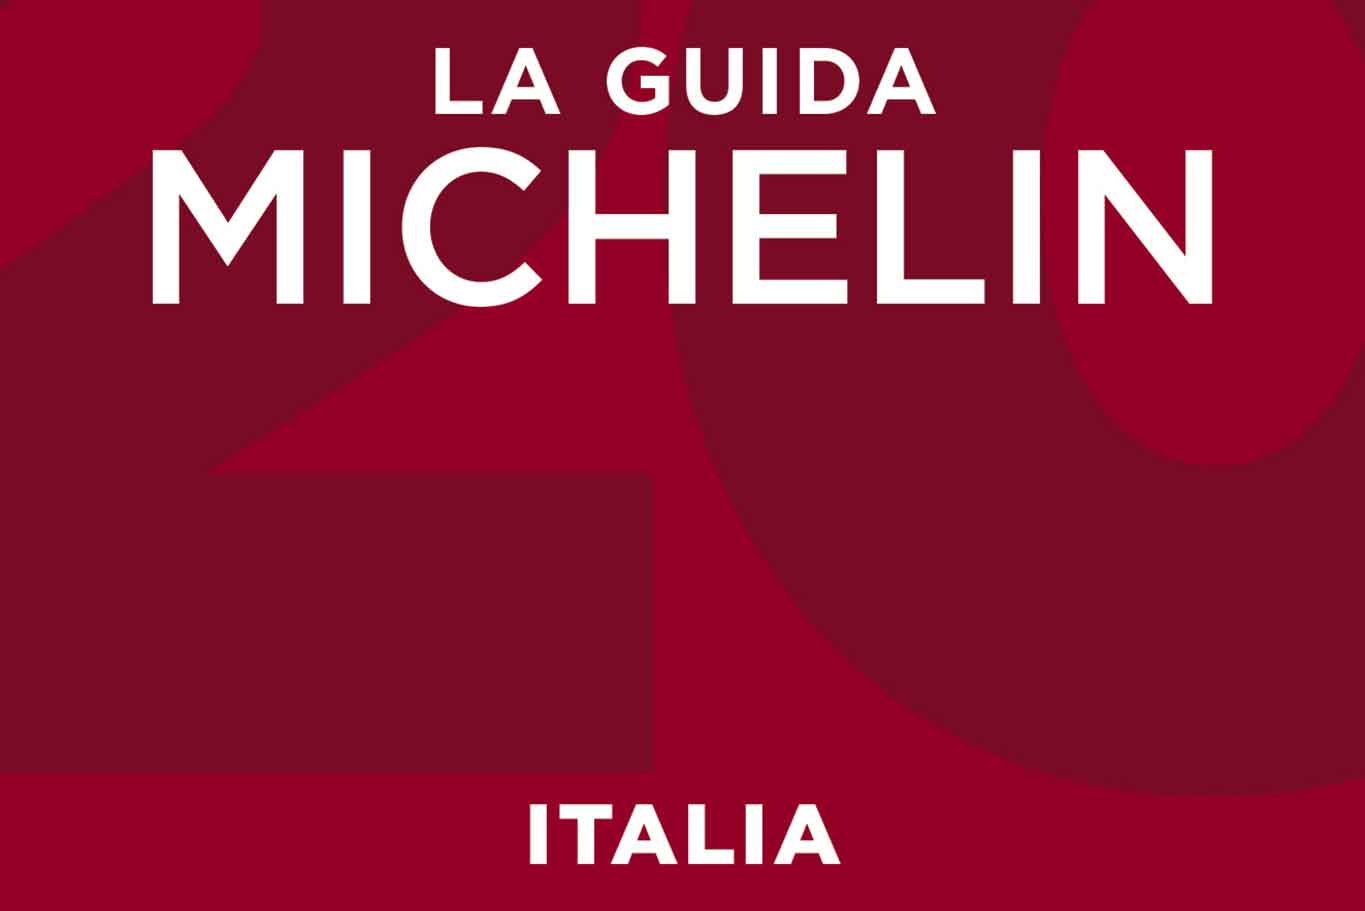 Guida Michelin 2021